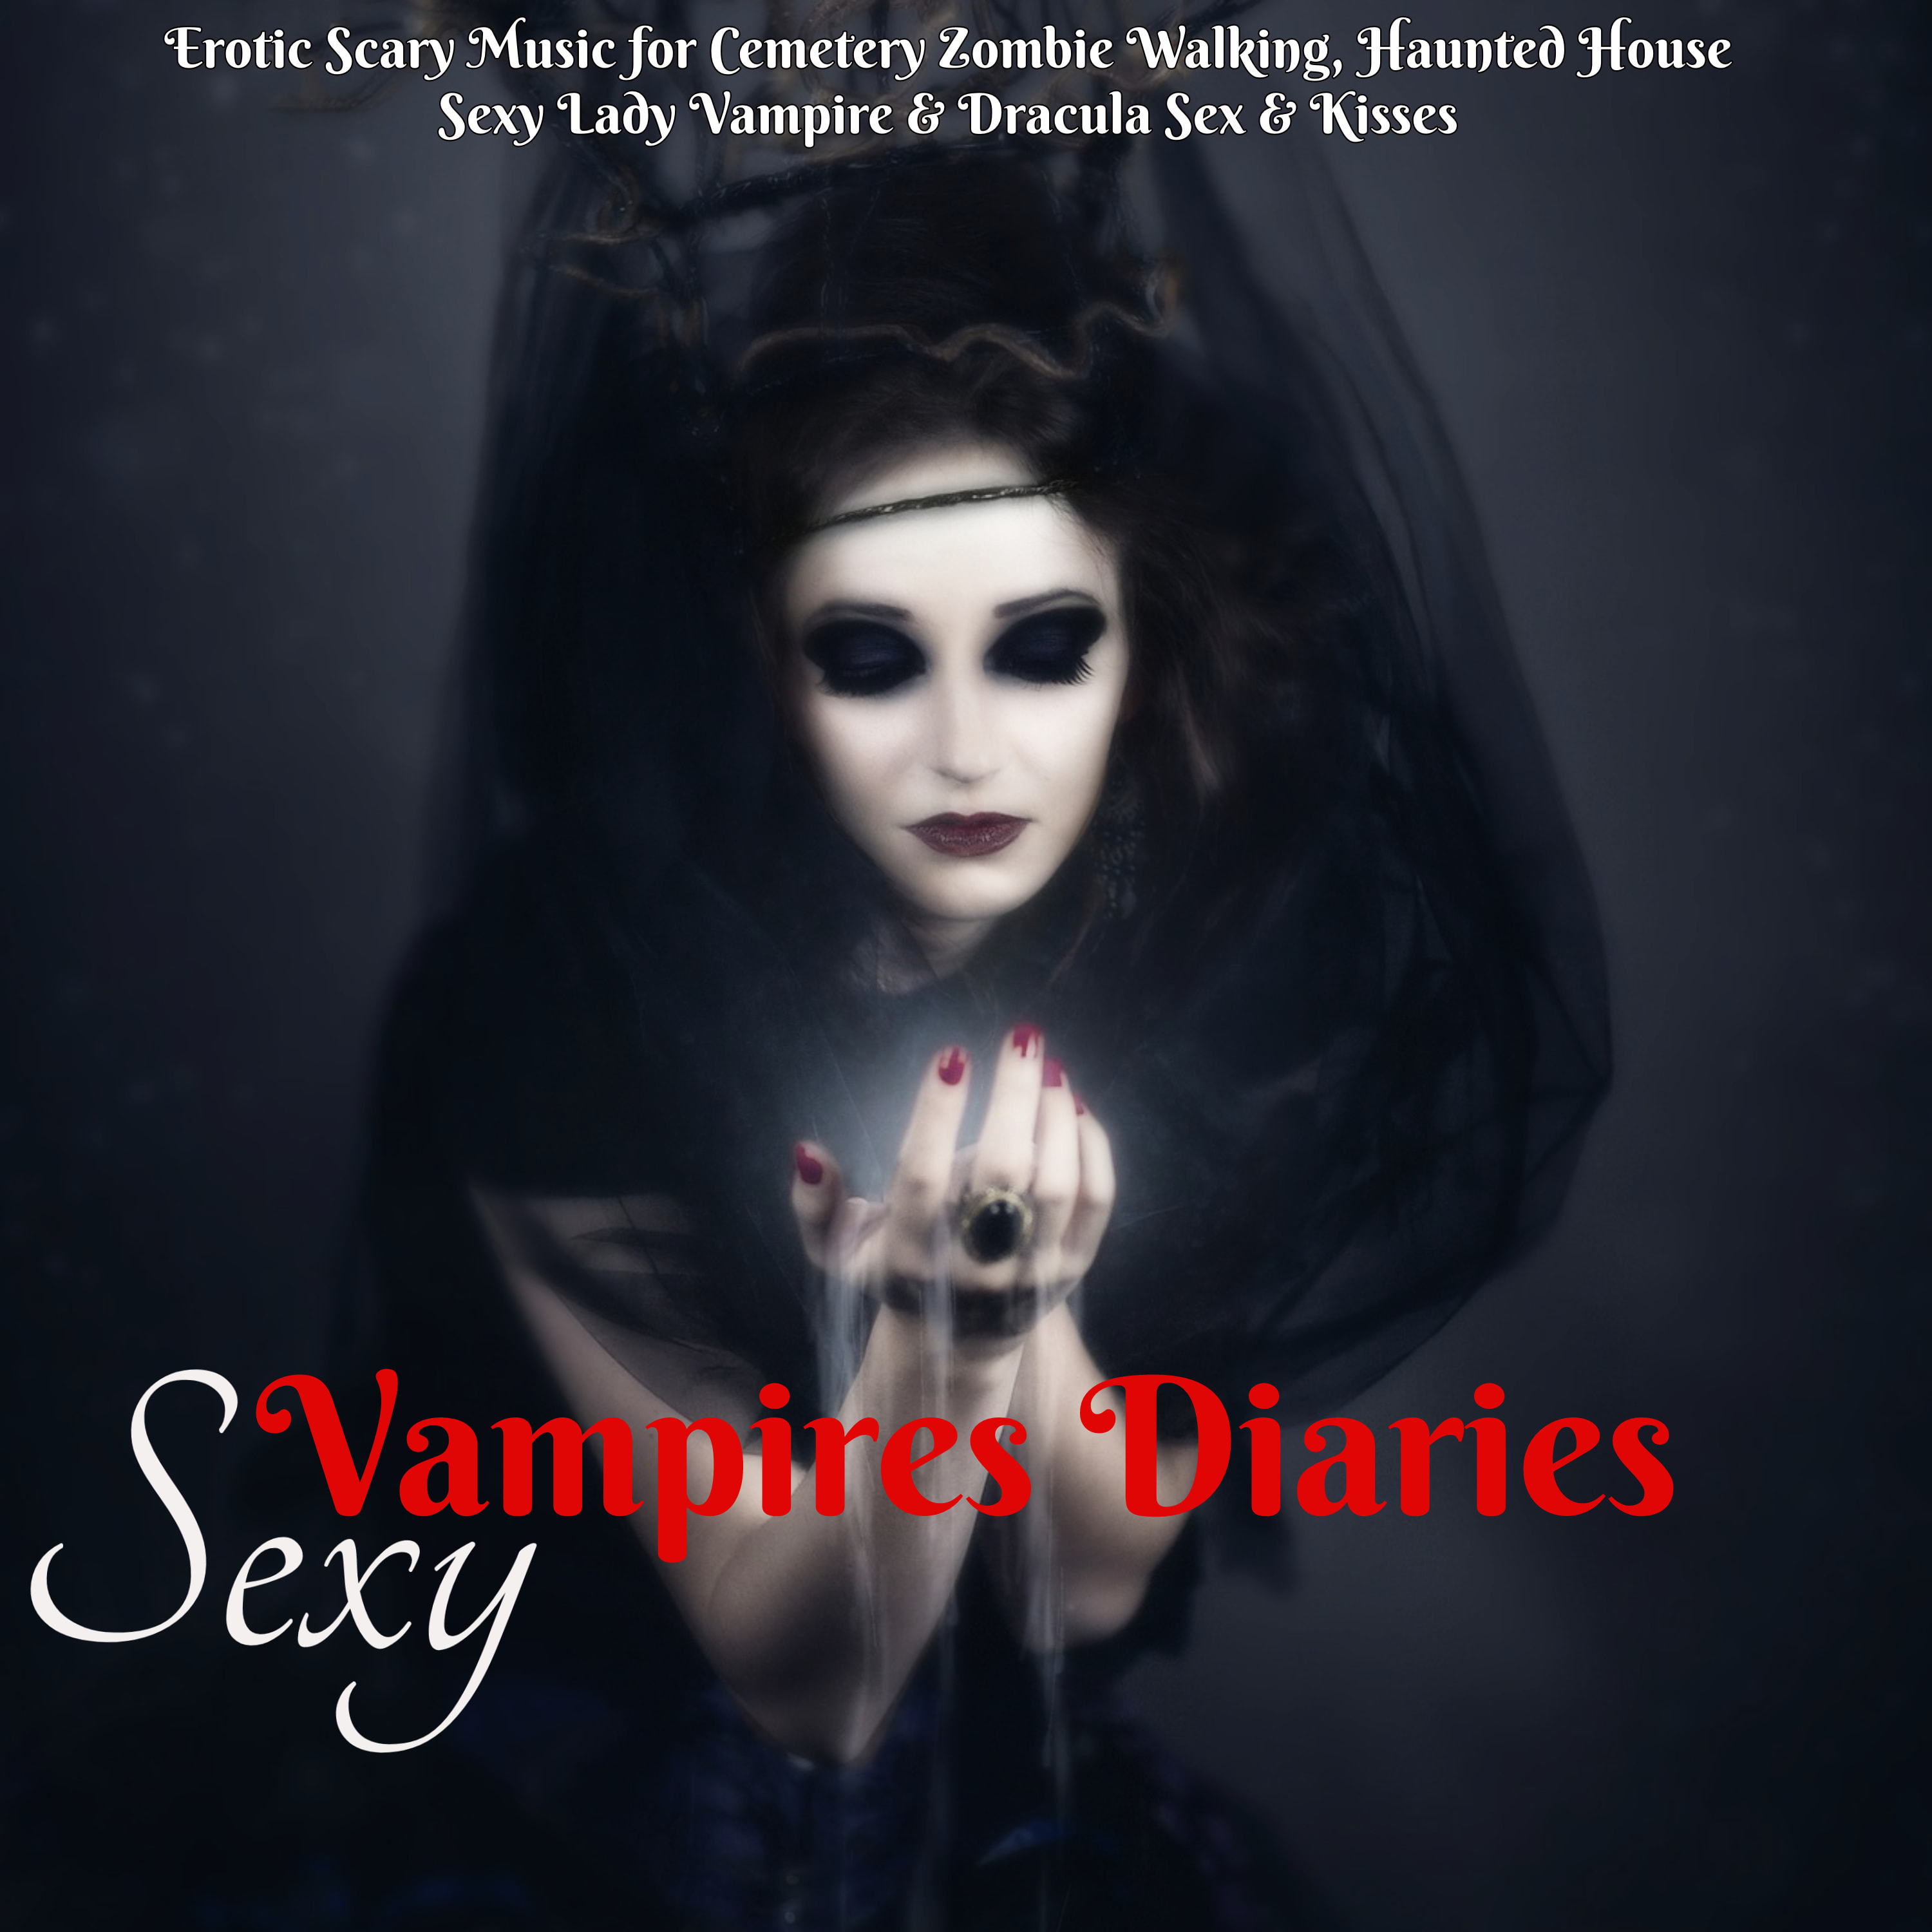 **** Vampire Diaries - Halloween House Music